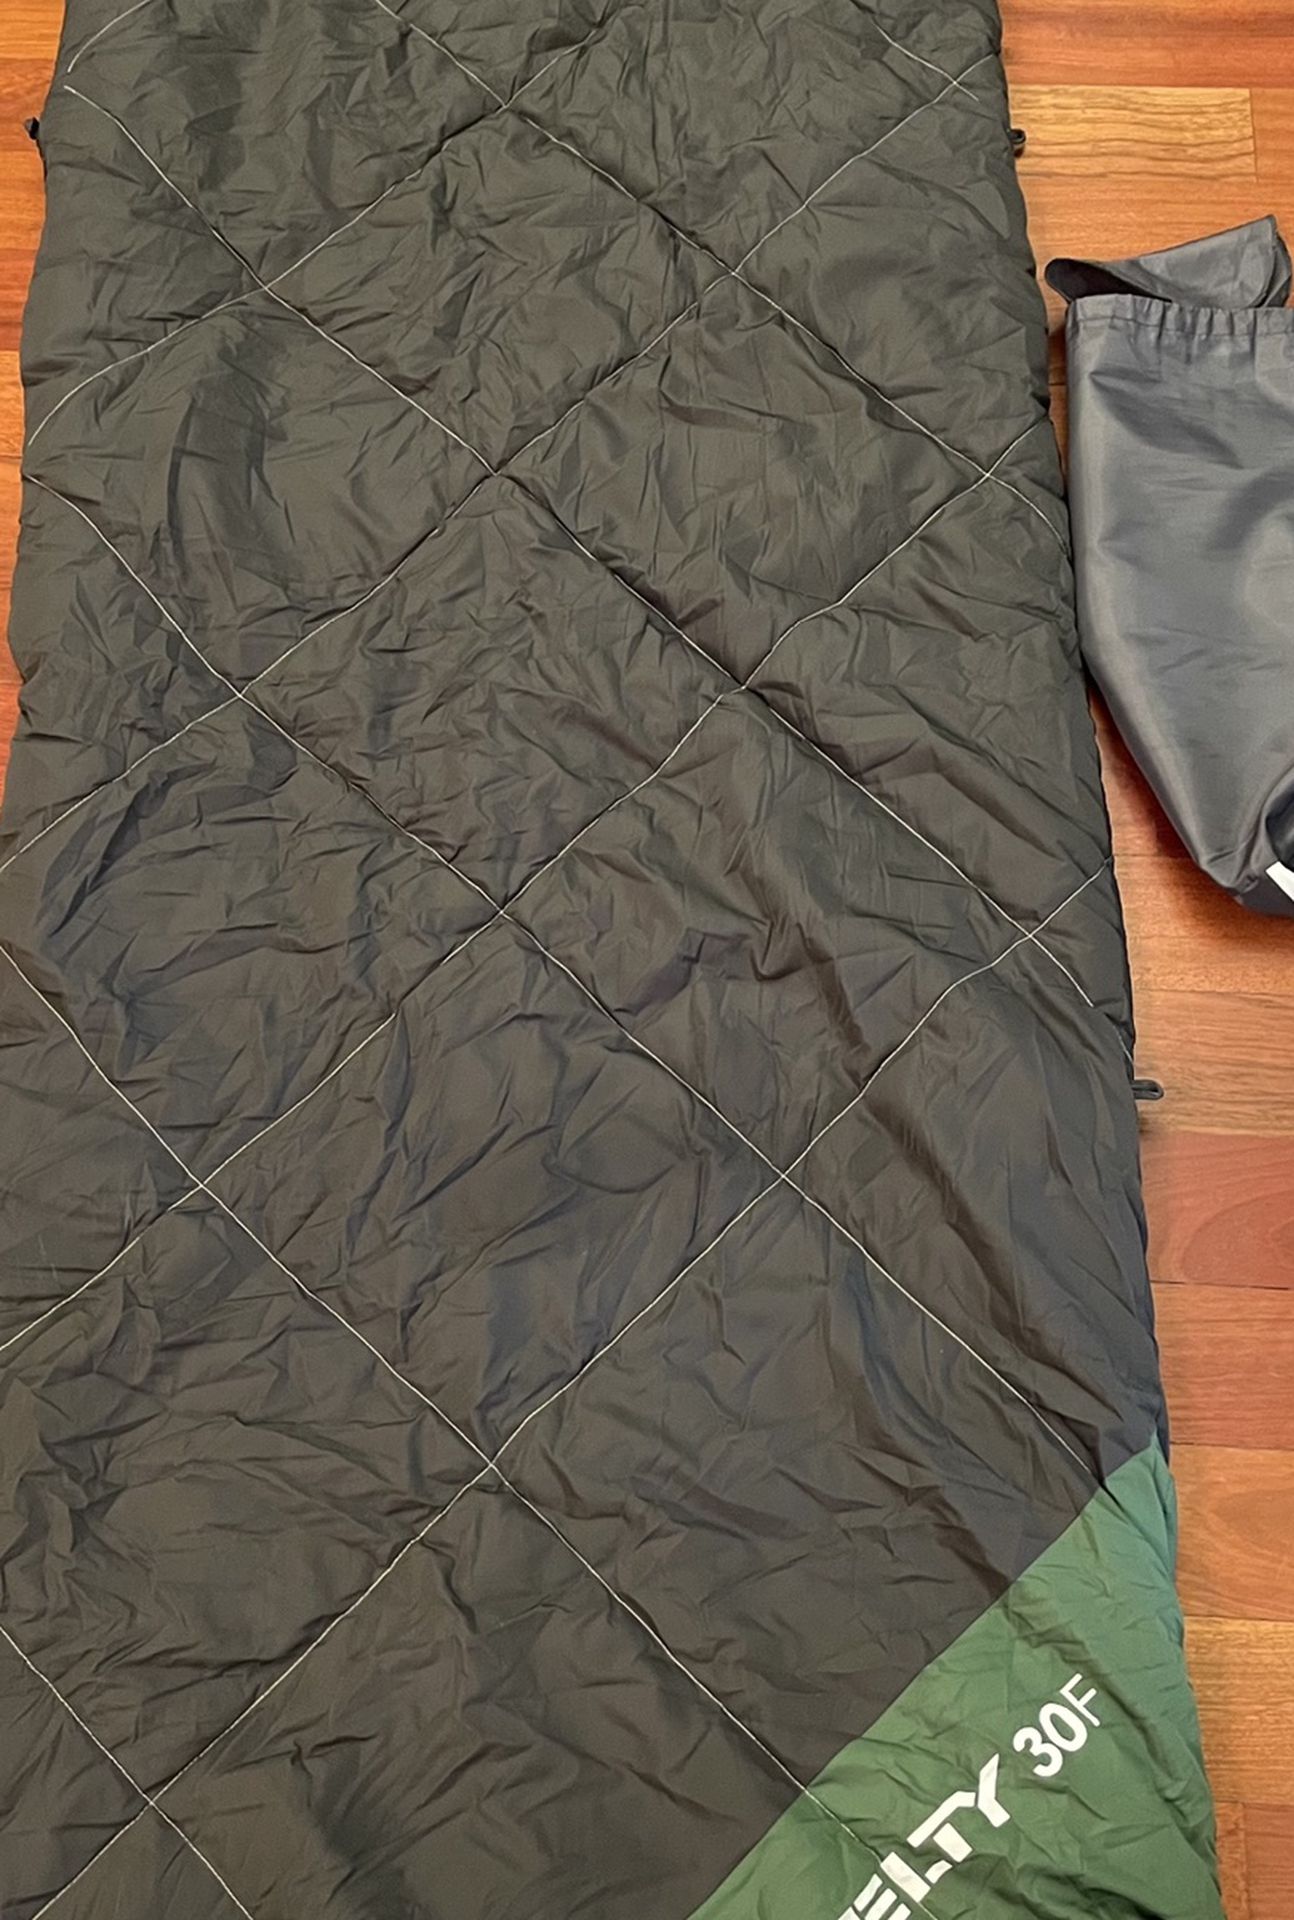 Kelty 30 F Sleeping Bag Gray Green Fleece Lining